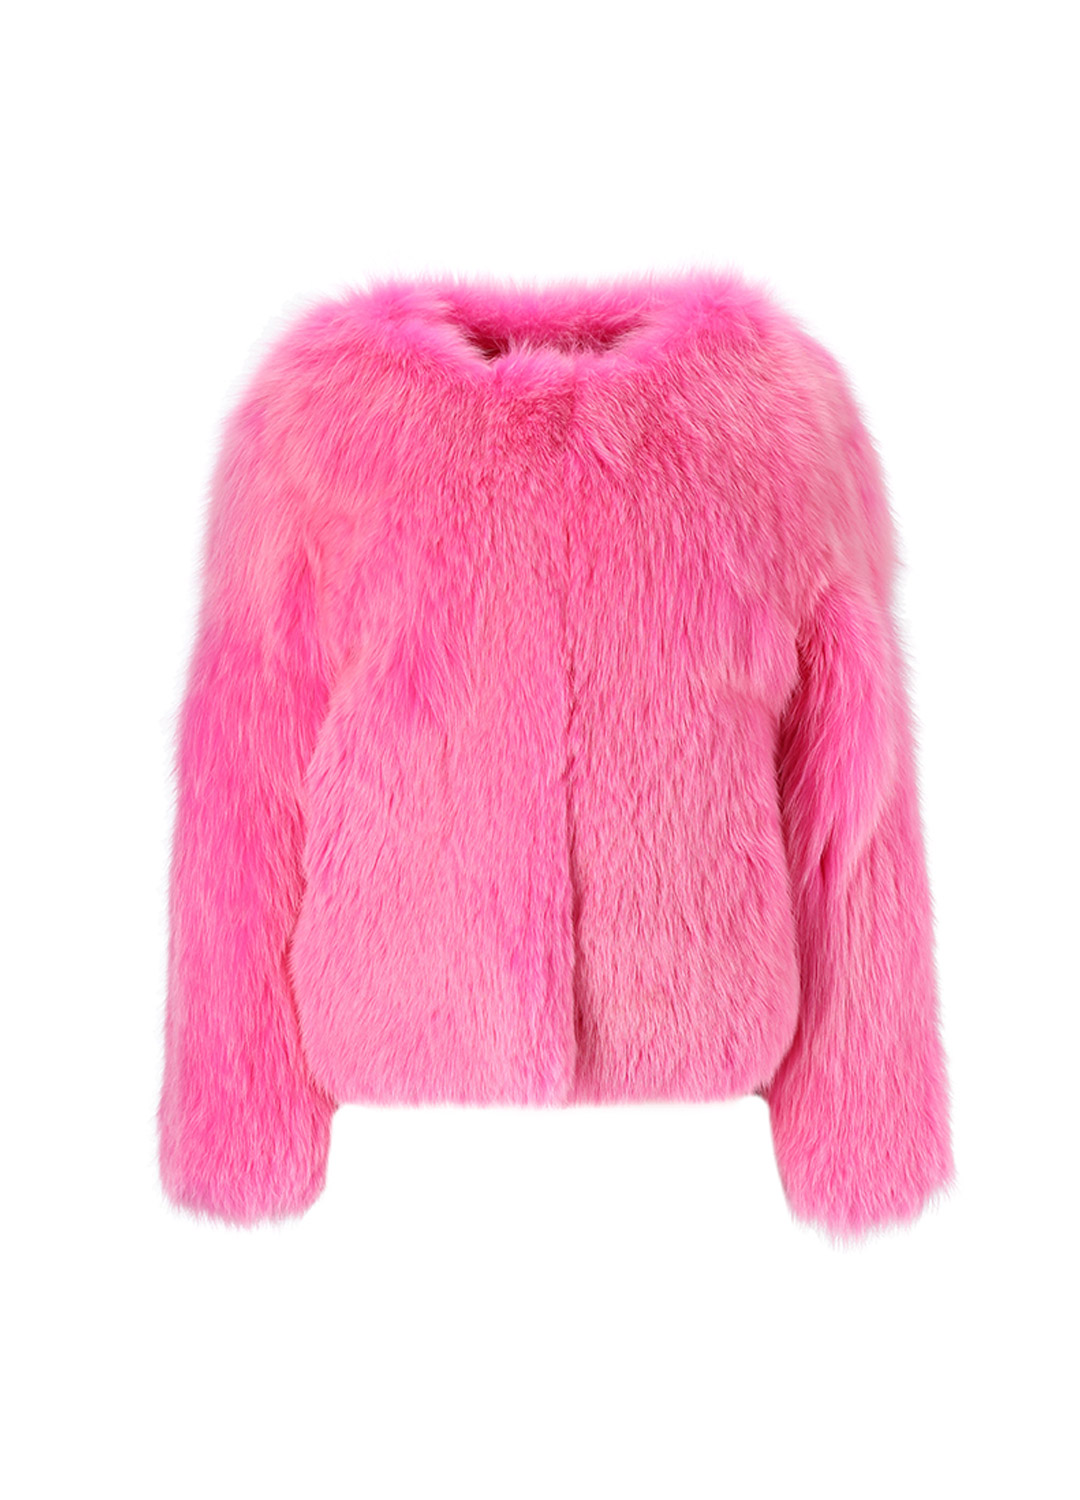 Pop fox coat [Hot pink]